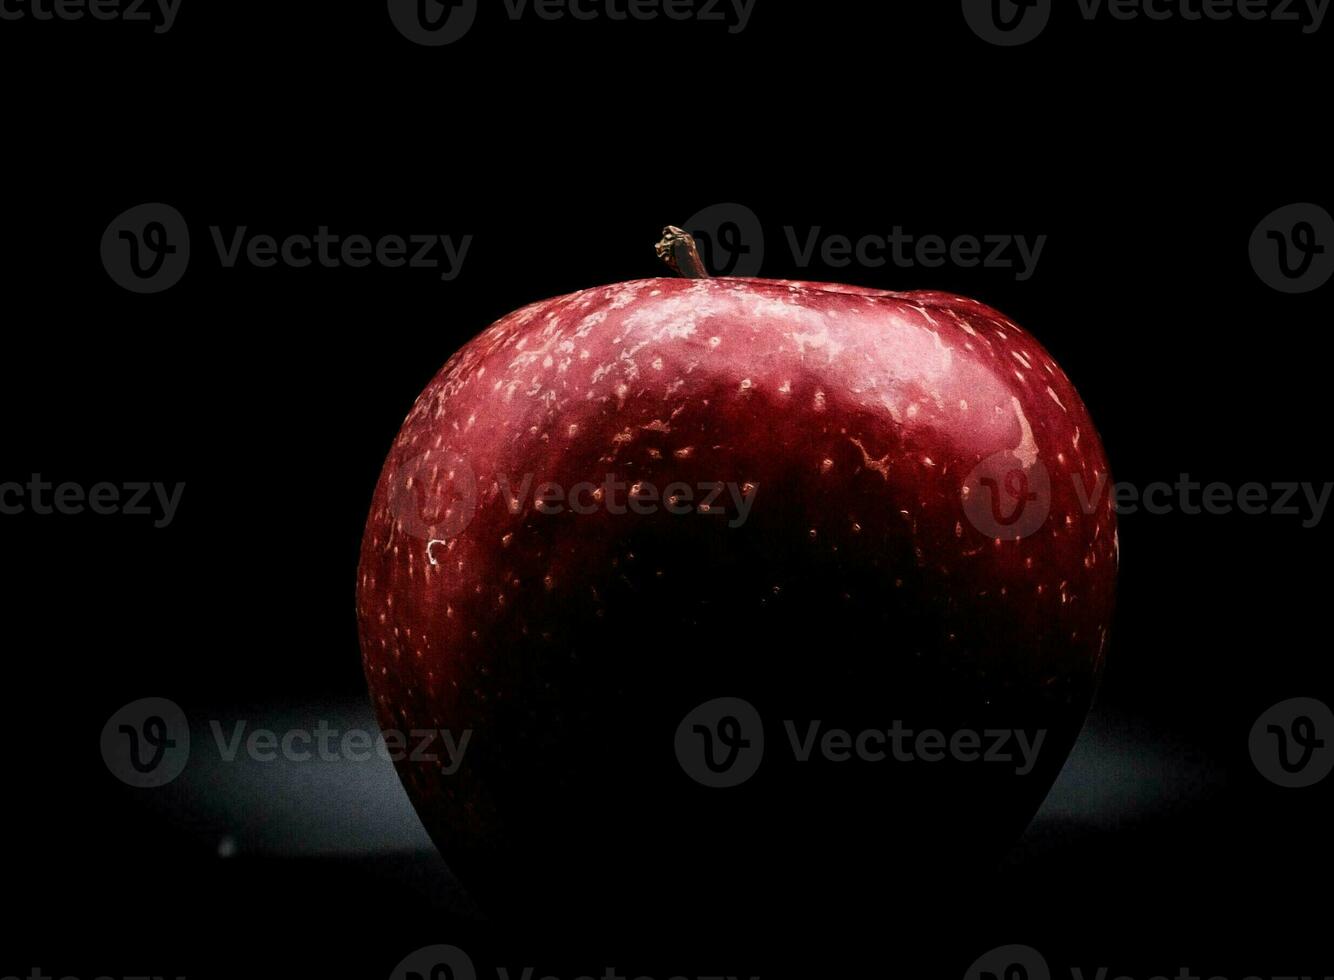 brilhante, vividamente colori vermelho maçã em uma Preto fundo durante uma estúdio foto sessão dentro a inverno do 2023